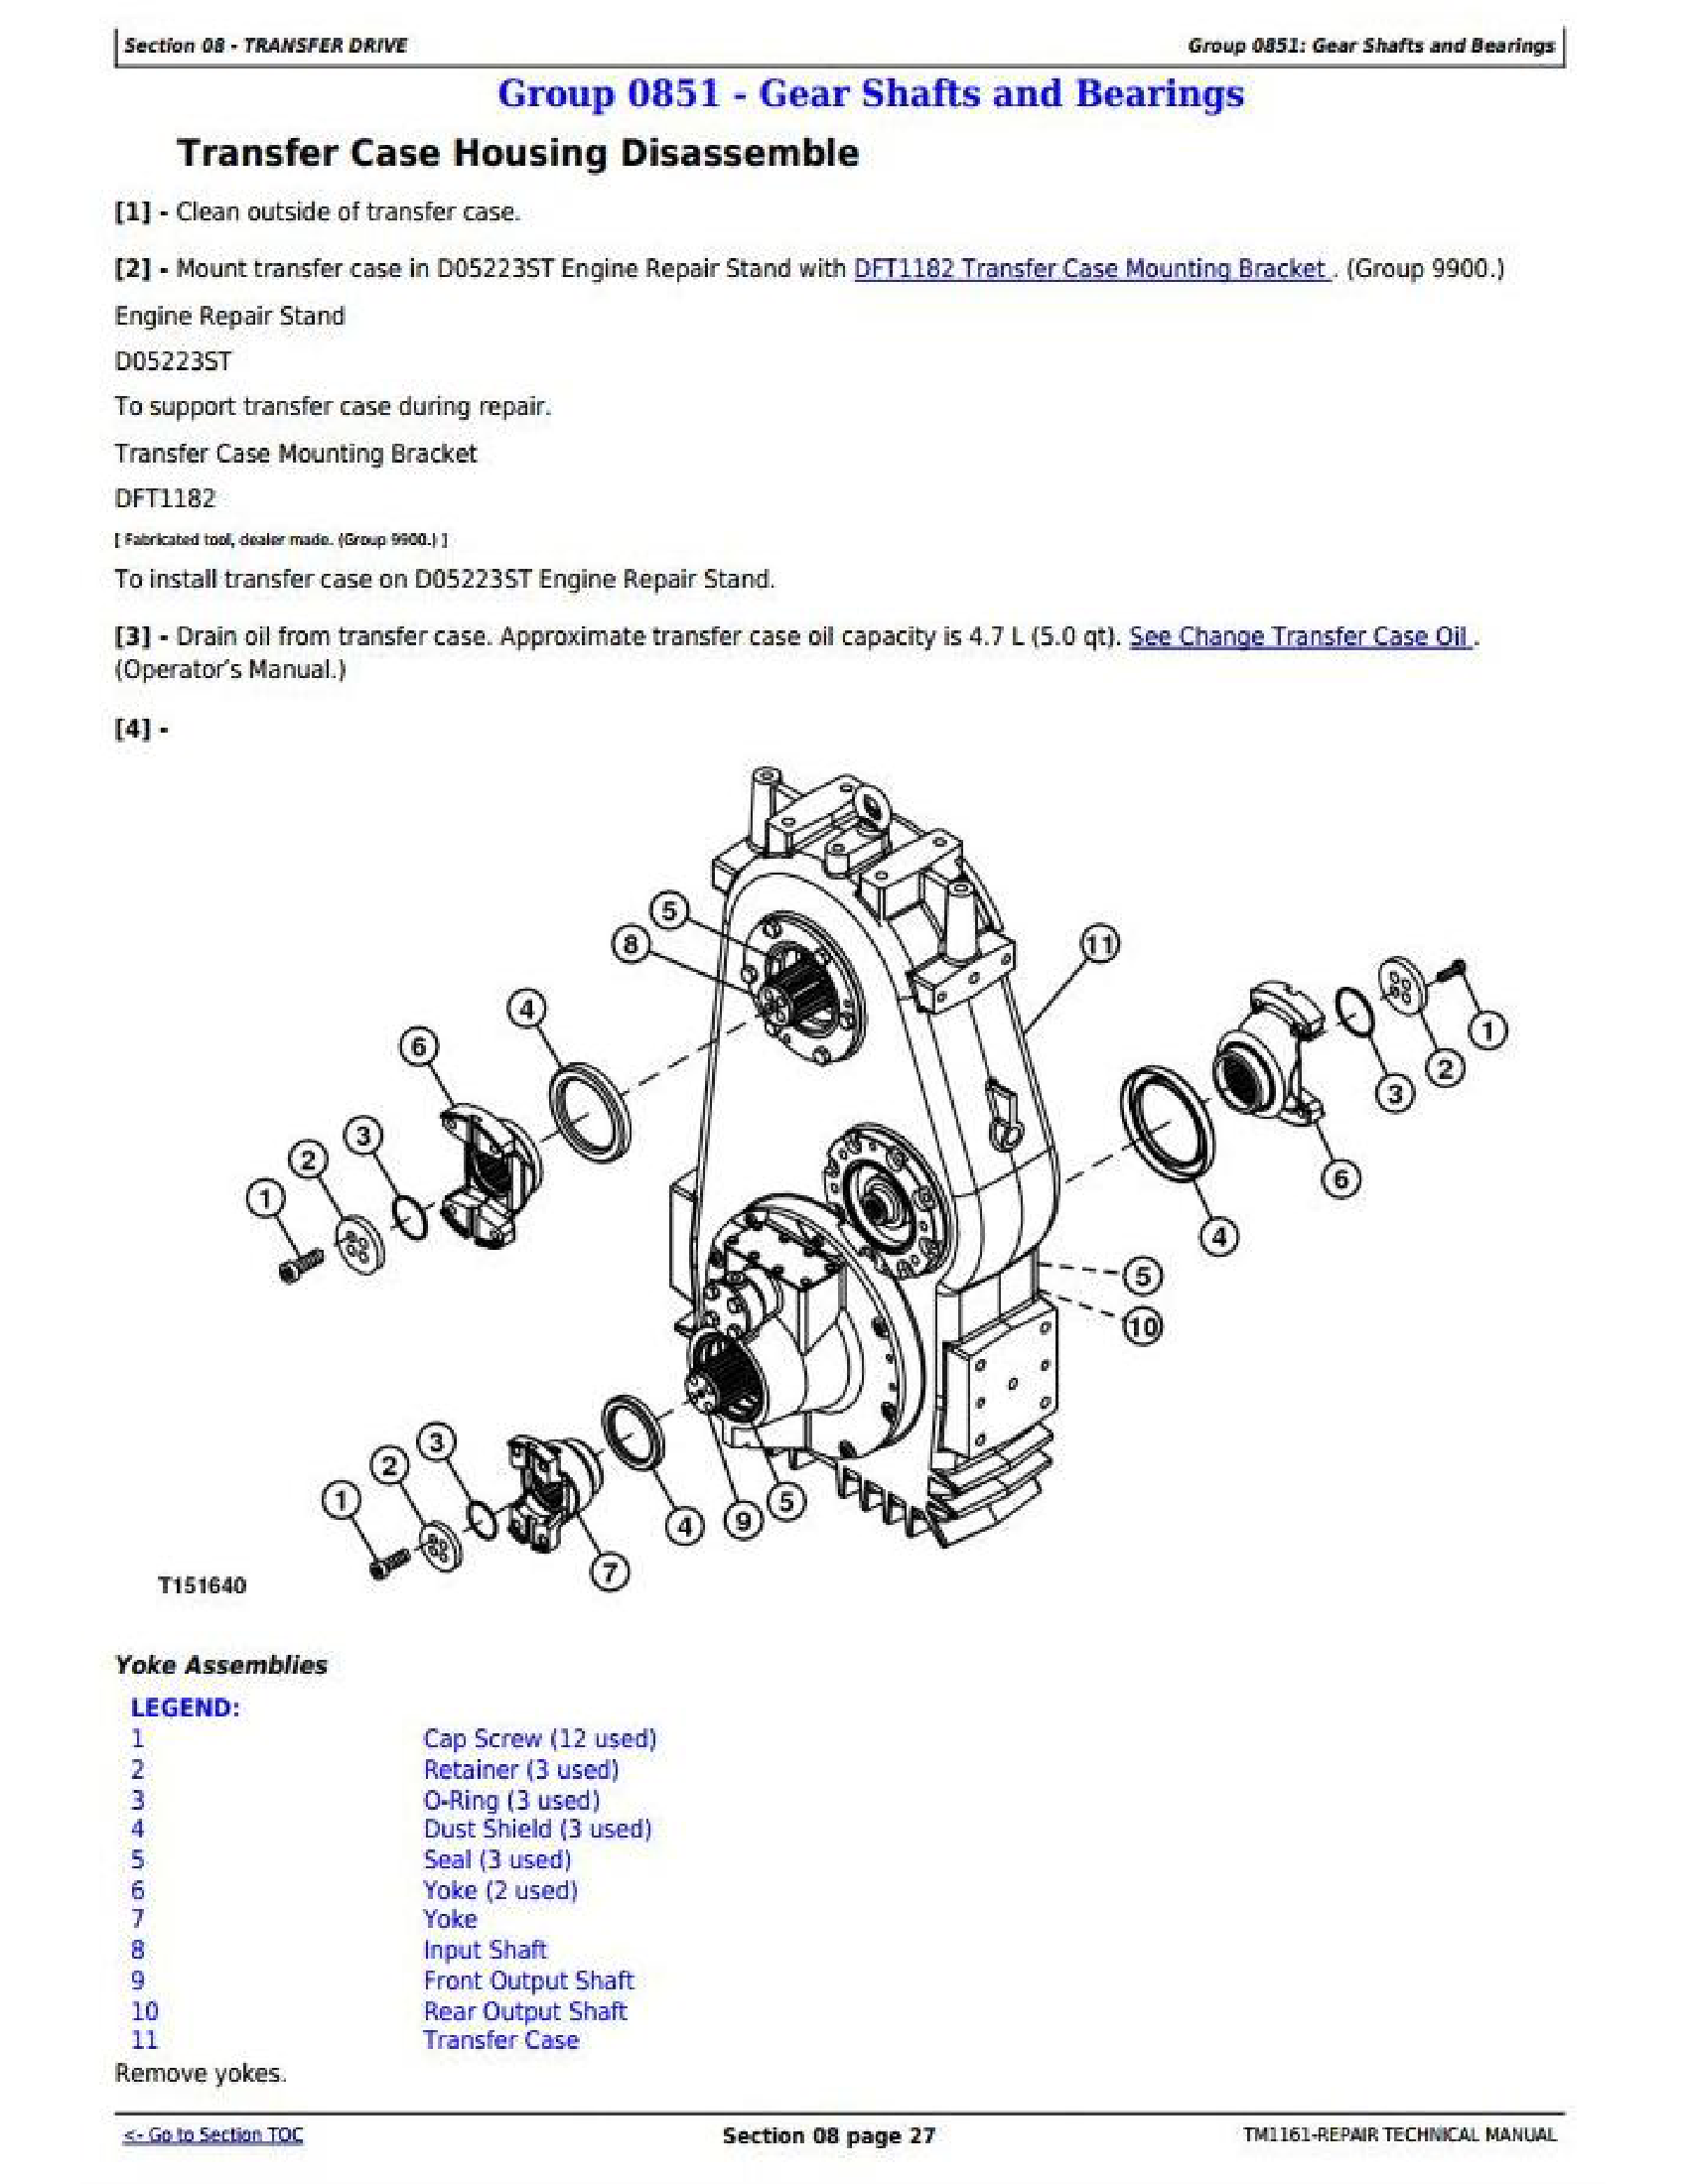 John Deere 750 manual pdf